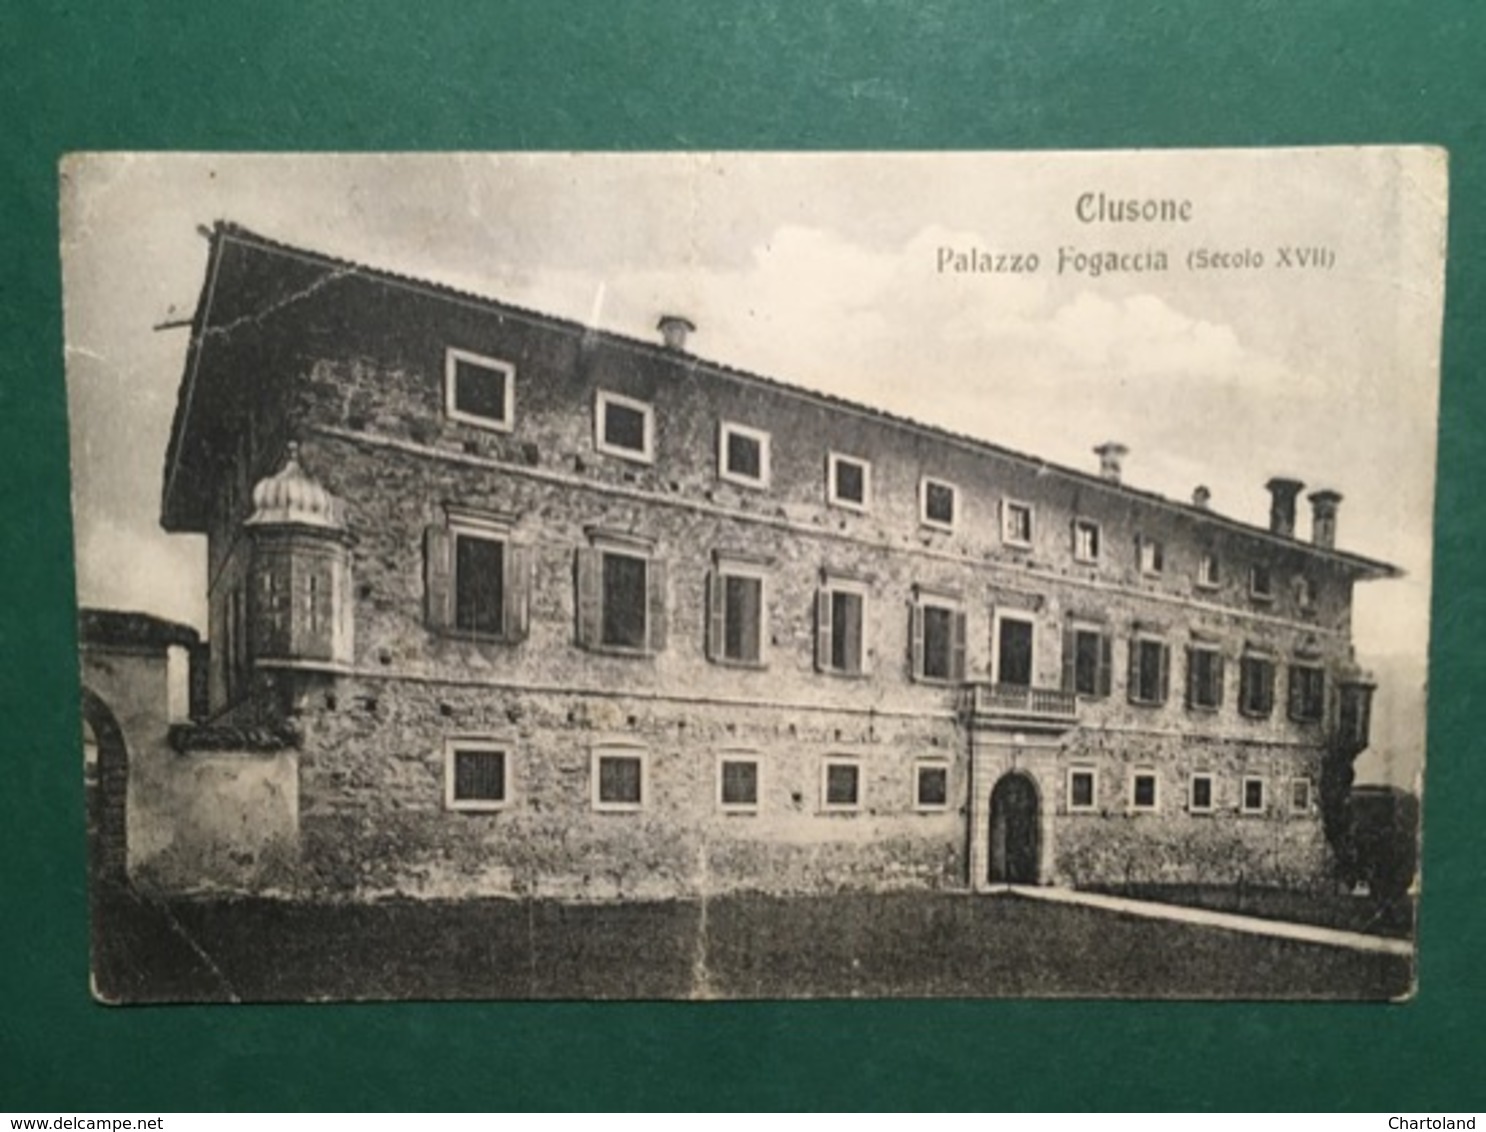 Cartolina Clusone - Palazzo Fogaccia - Scecolo XVII - 1921 - Cuneo